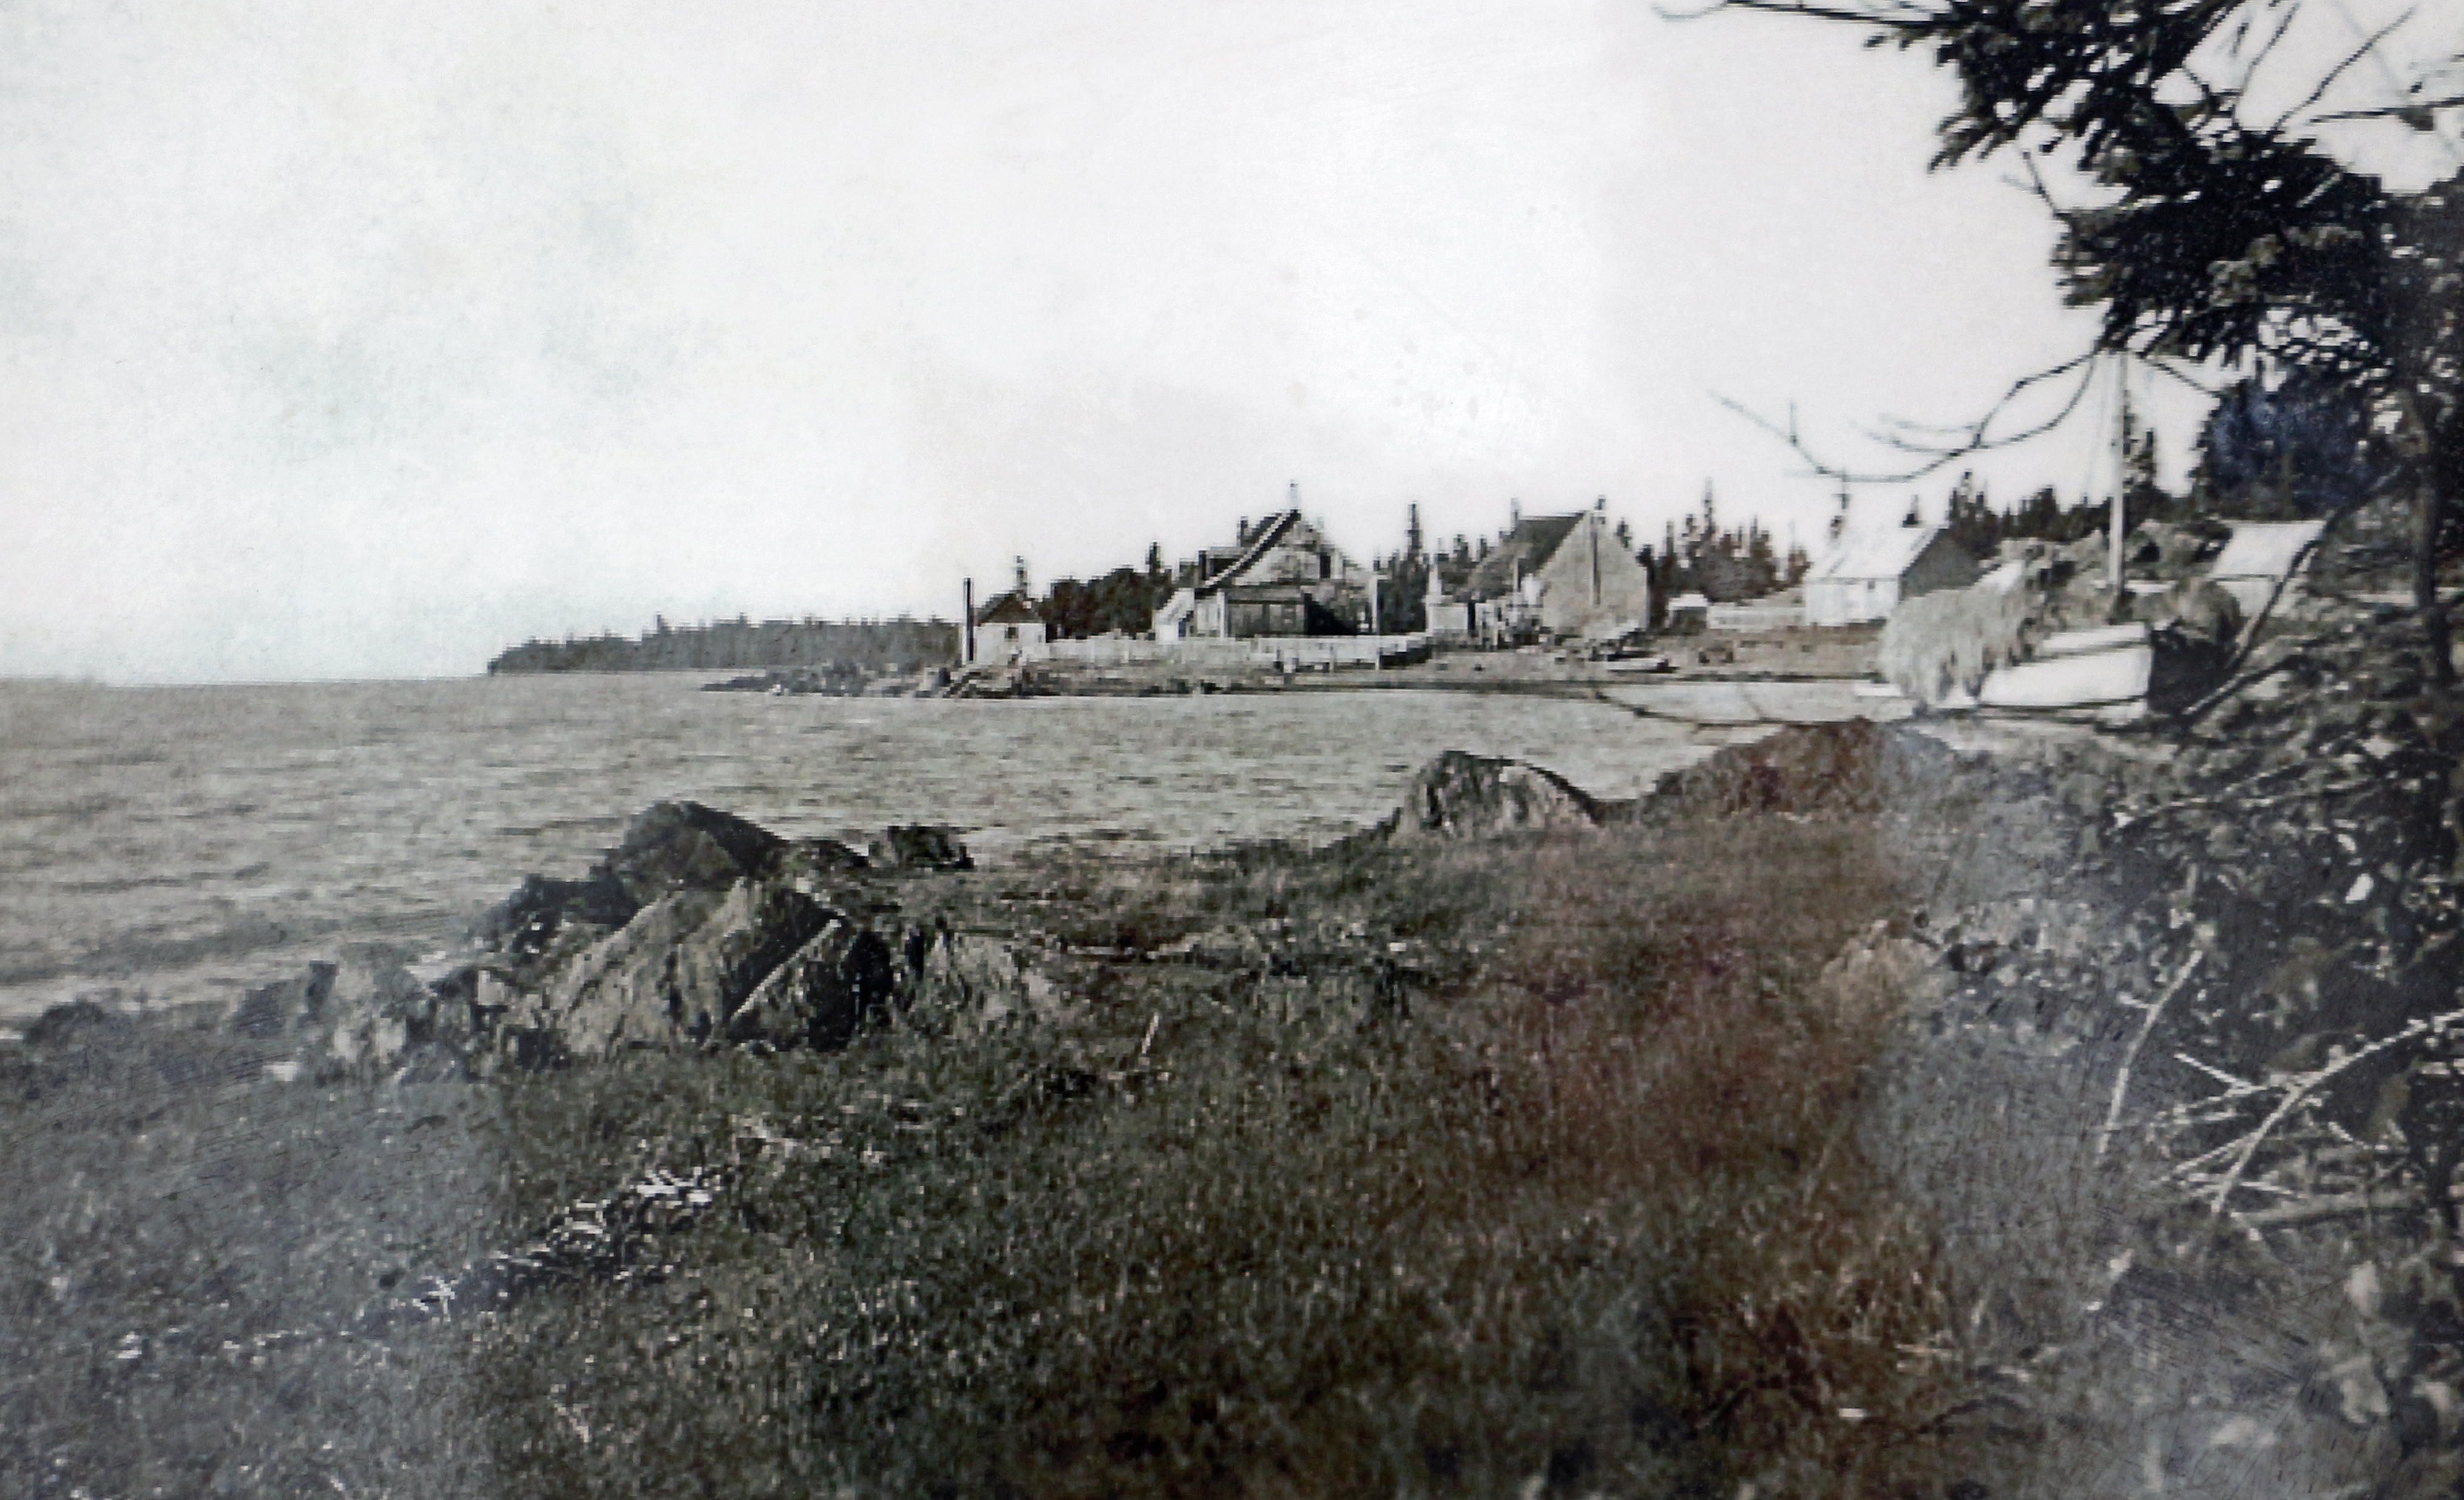 Photographie noir et blanc qui présente quatre bâtiments en bois, à l'arrière-plan. Devant se trouve une baie où une petite embarcation à mat est accostée sur la berge rocheuse.